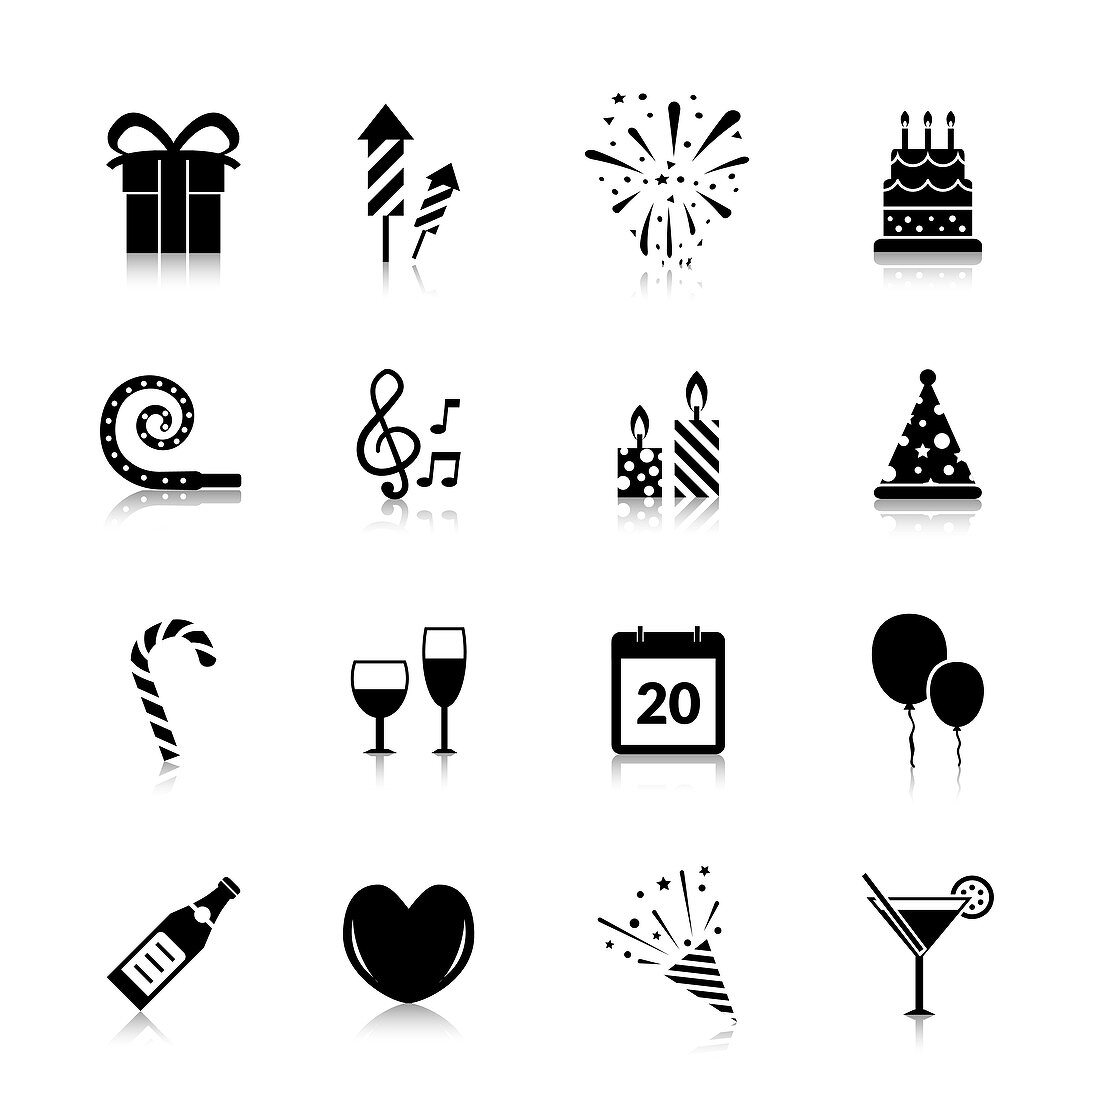 Celebration icons, illustration